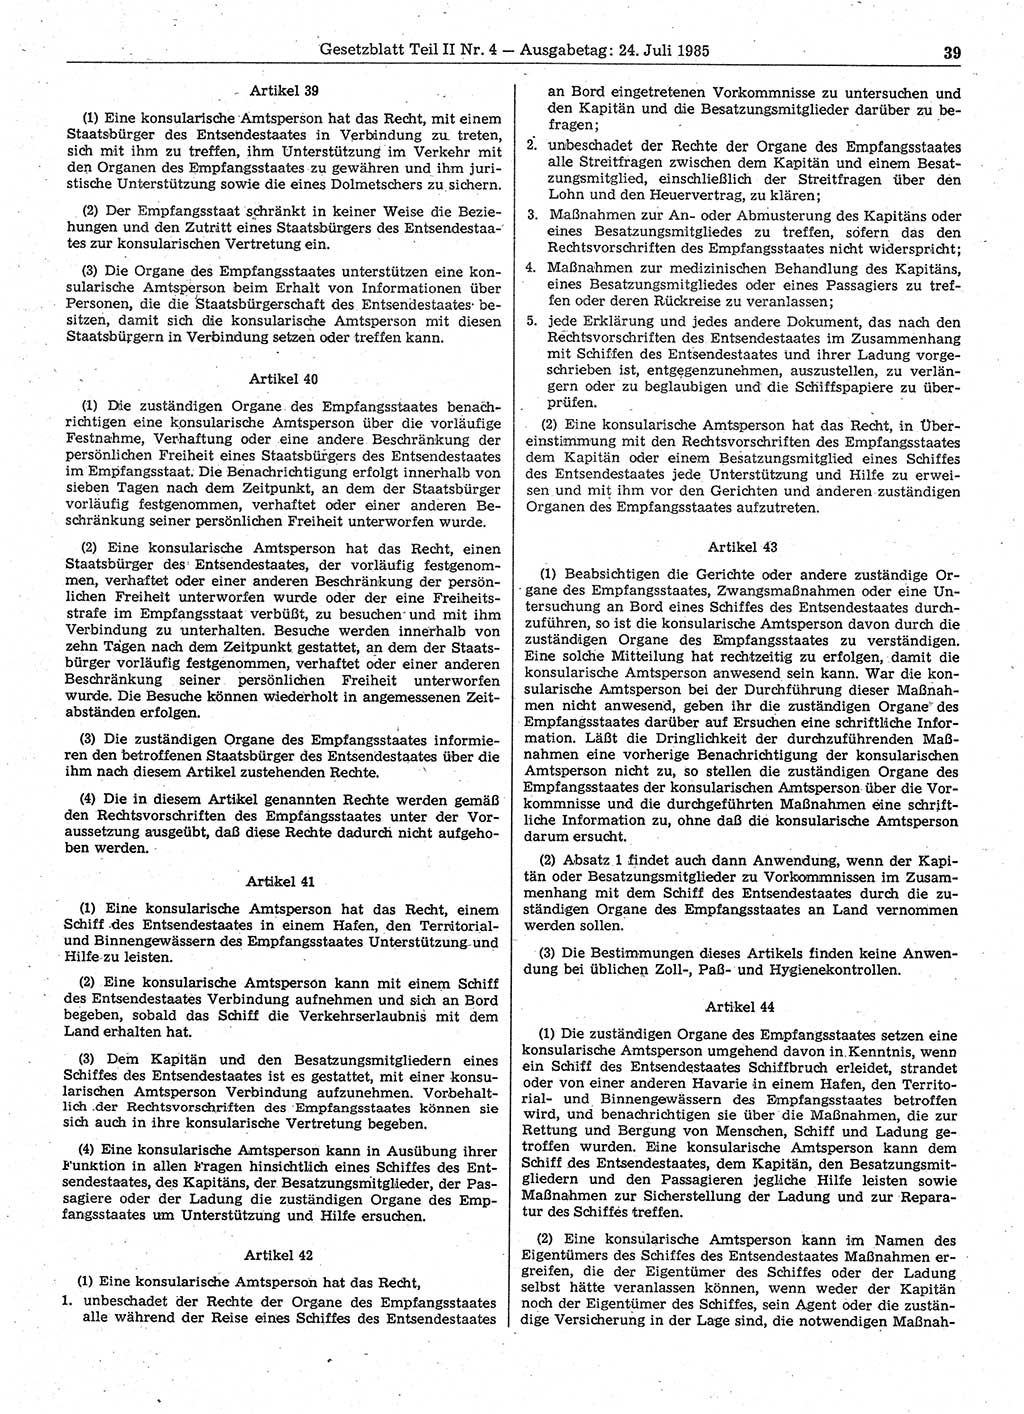 Gesetzblatt (GBl.) der Deutschen Demokratischen Republik (DDR) Teil ⅠⅠ 1985, Seite 39 (GBl. DDR ⅠⅠ 1985, S. 39)